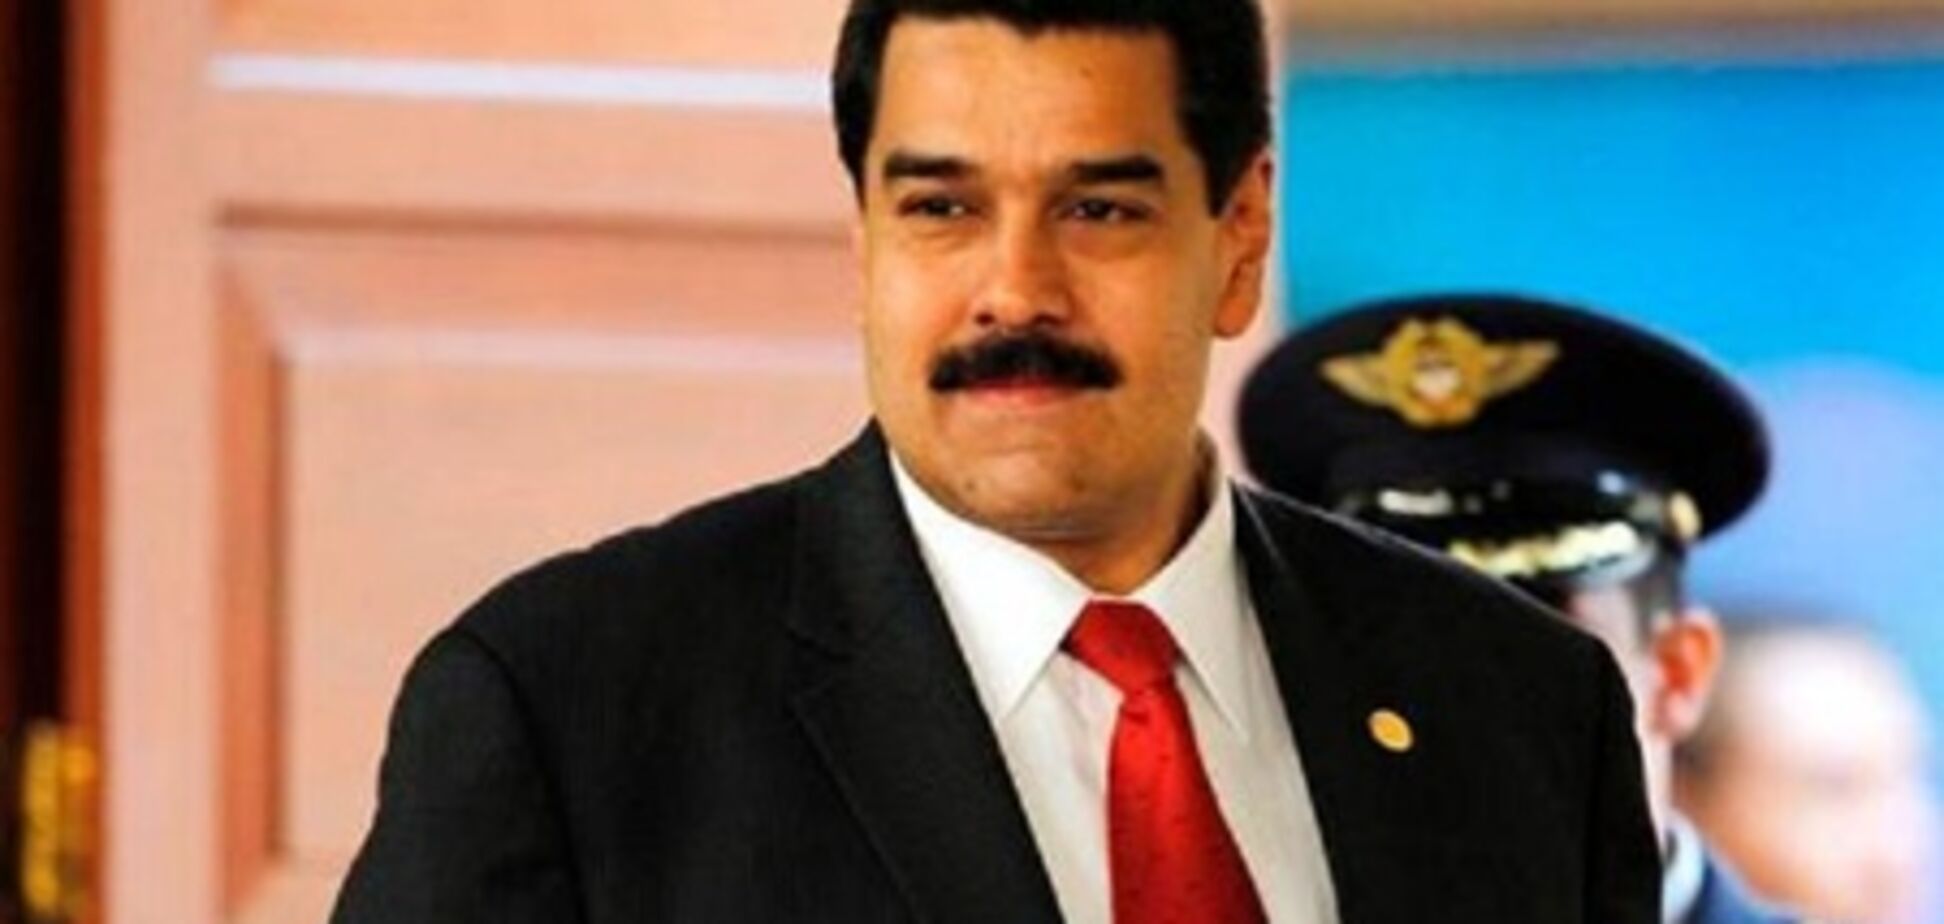 Власти Венесуэлы разрешили отложить инаугурацию Чавеса